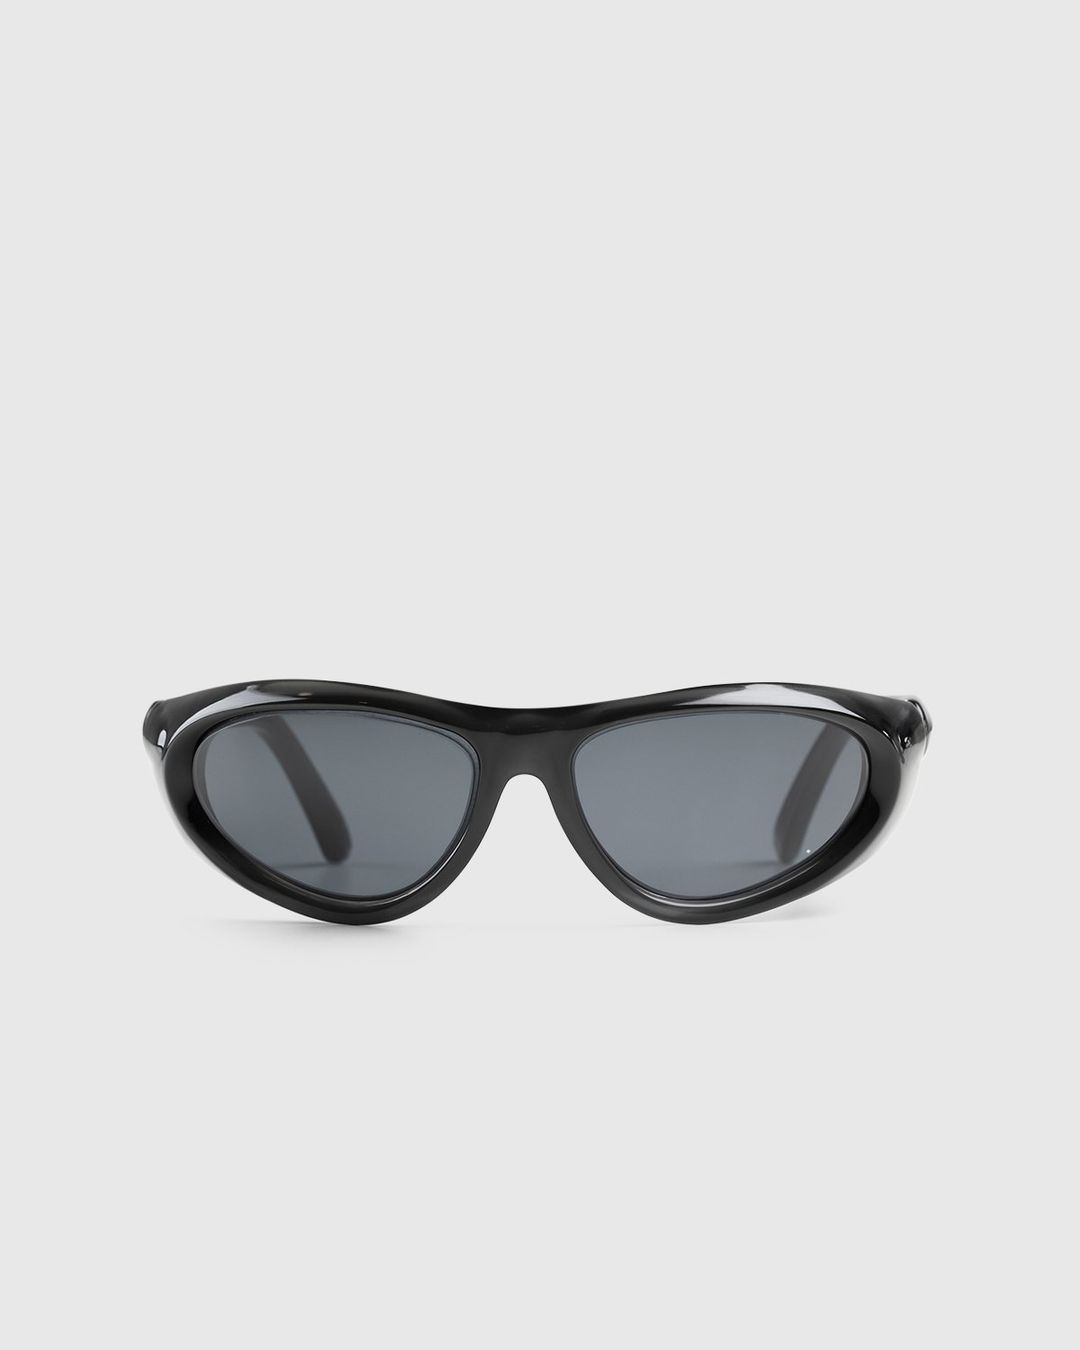 Tobias Spichtig x Highsnobiety – Sunglasses Grey | Highsnobiety Shop